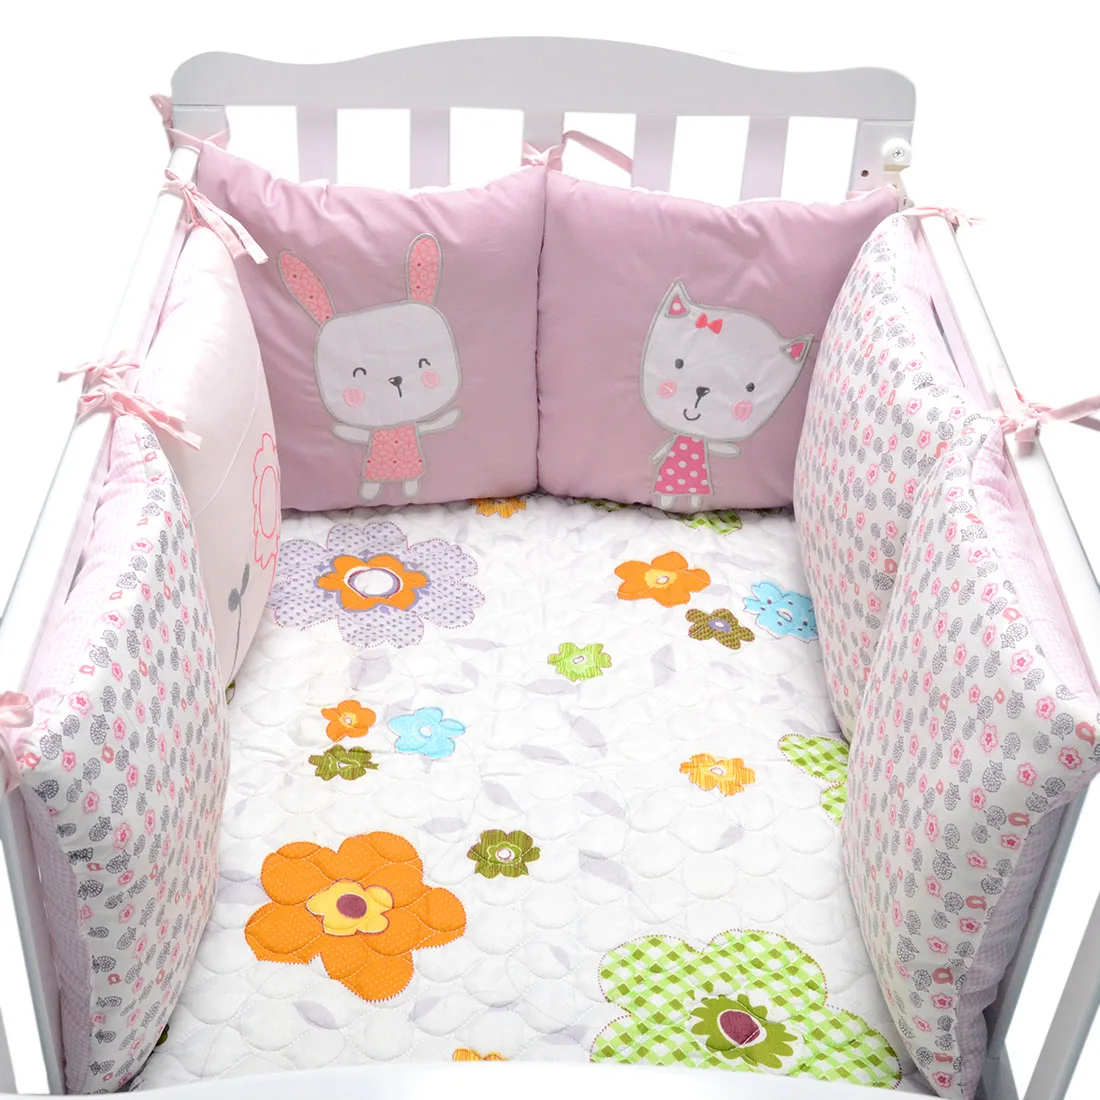 6 шт./лот детская кровать кроватка бампер новорожденный безопасное ограждение линия Кролик Цветы младенческое постельное белье-Бампер Набор bebe защита для кроватки унисекс